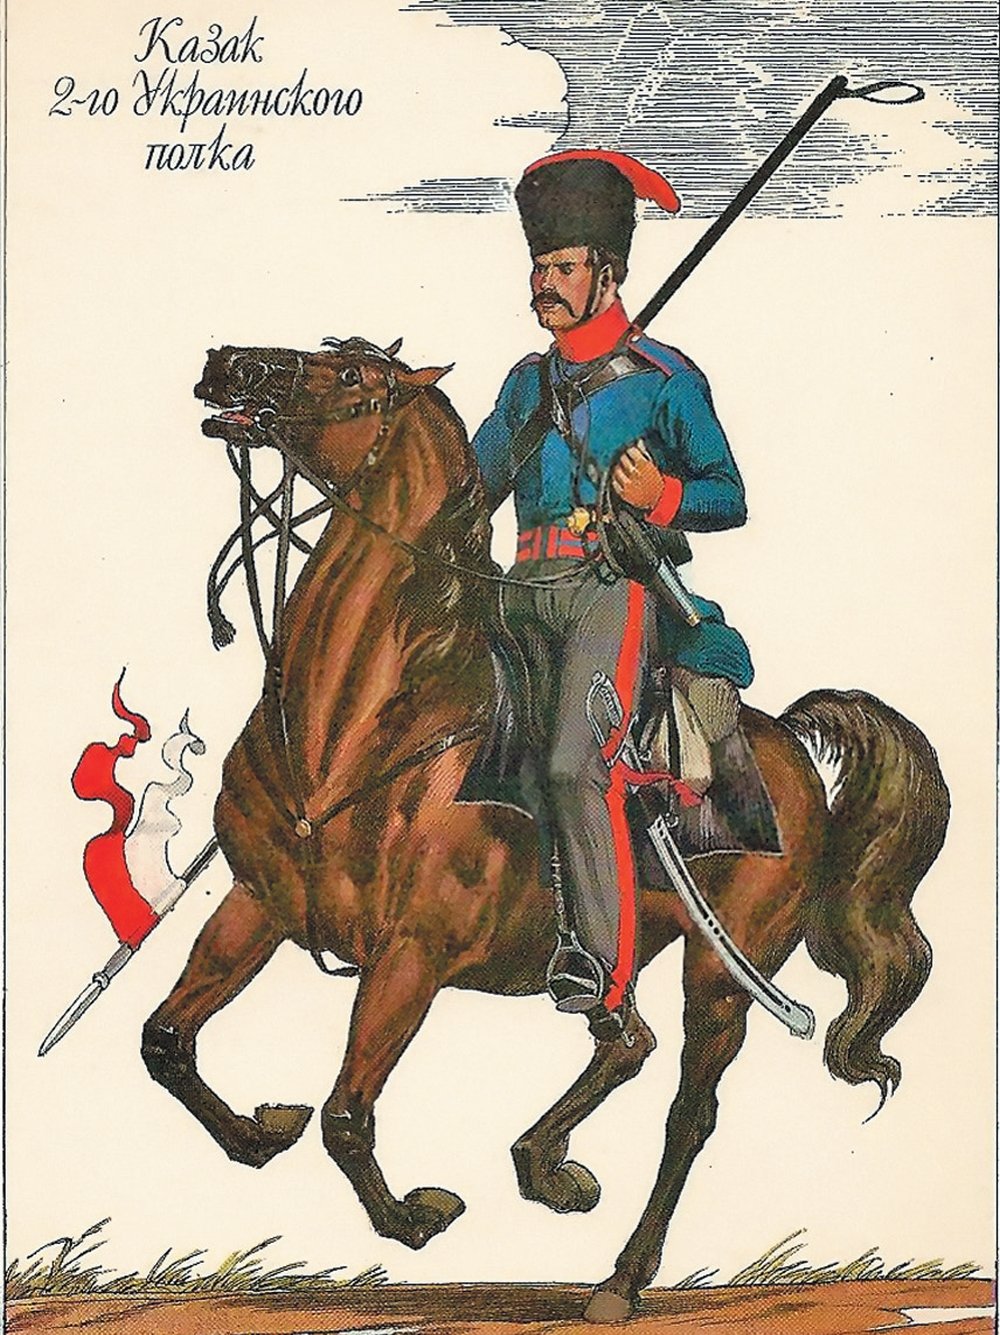 О. Пархаев. Казак 2-го Украинского полка. 1812 год.